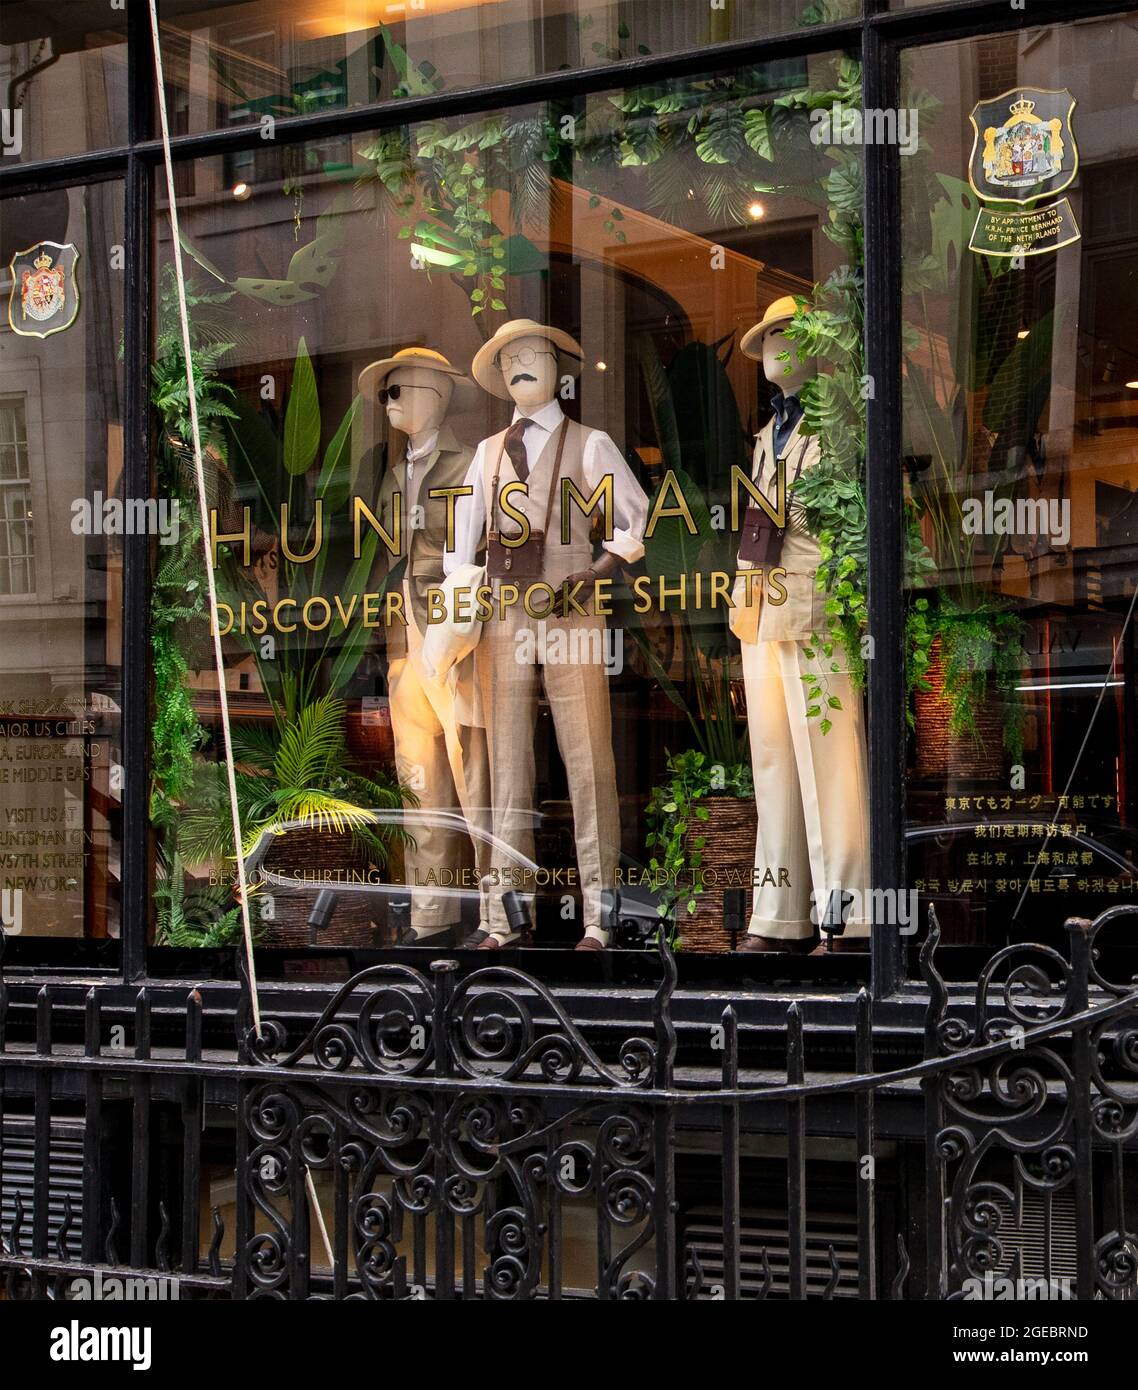 Fenêtre de Huntsman, sur mesure haut de gamme sur Savile Row, Londres ; inspiration pour la série de films de Kingsman Banque D'Images